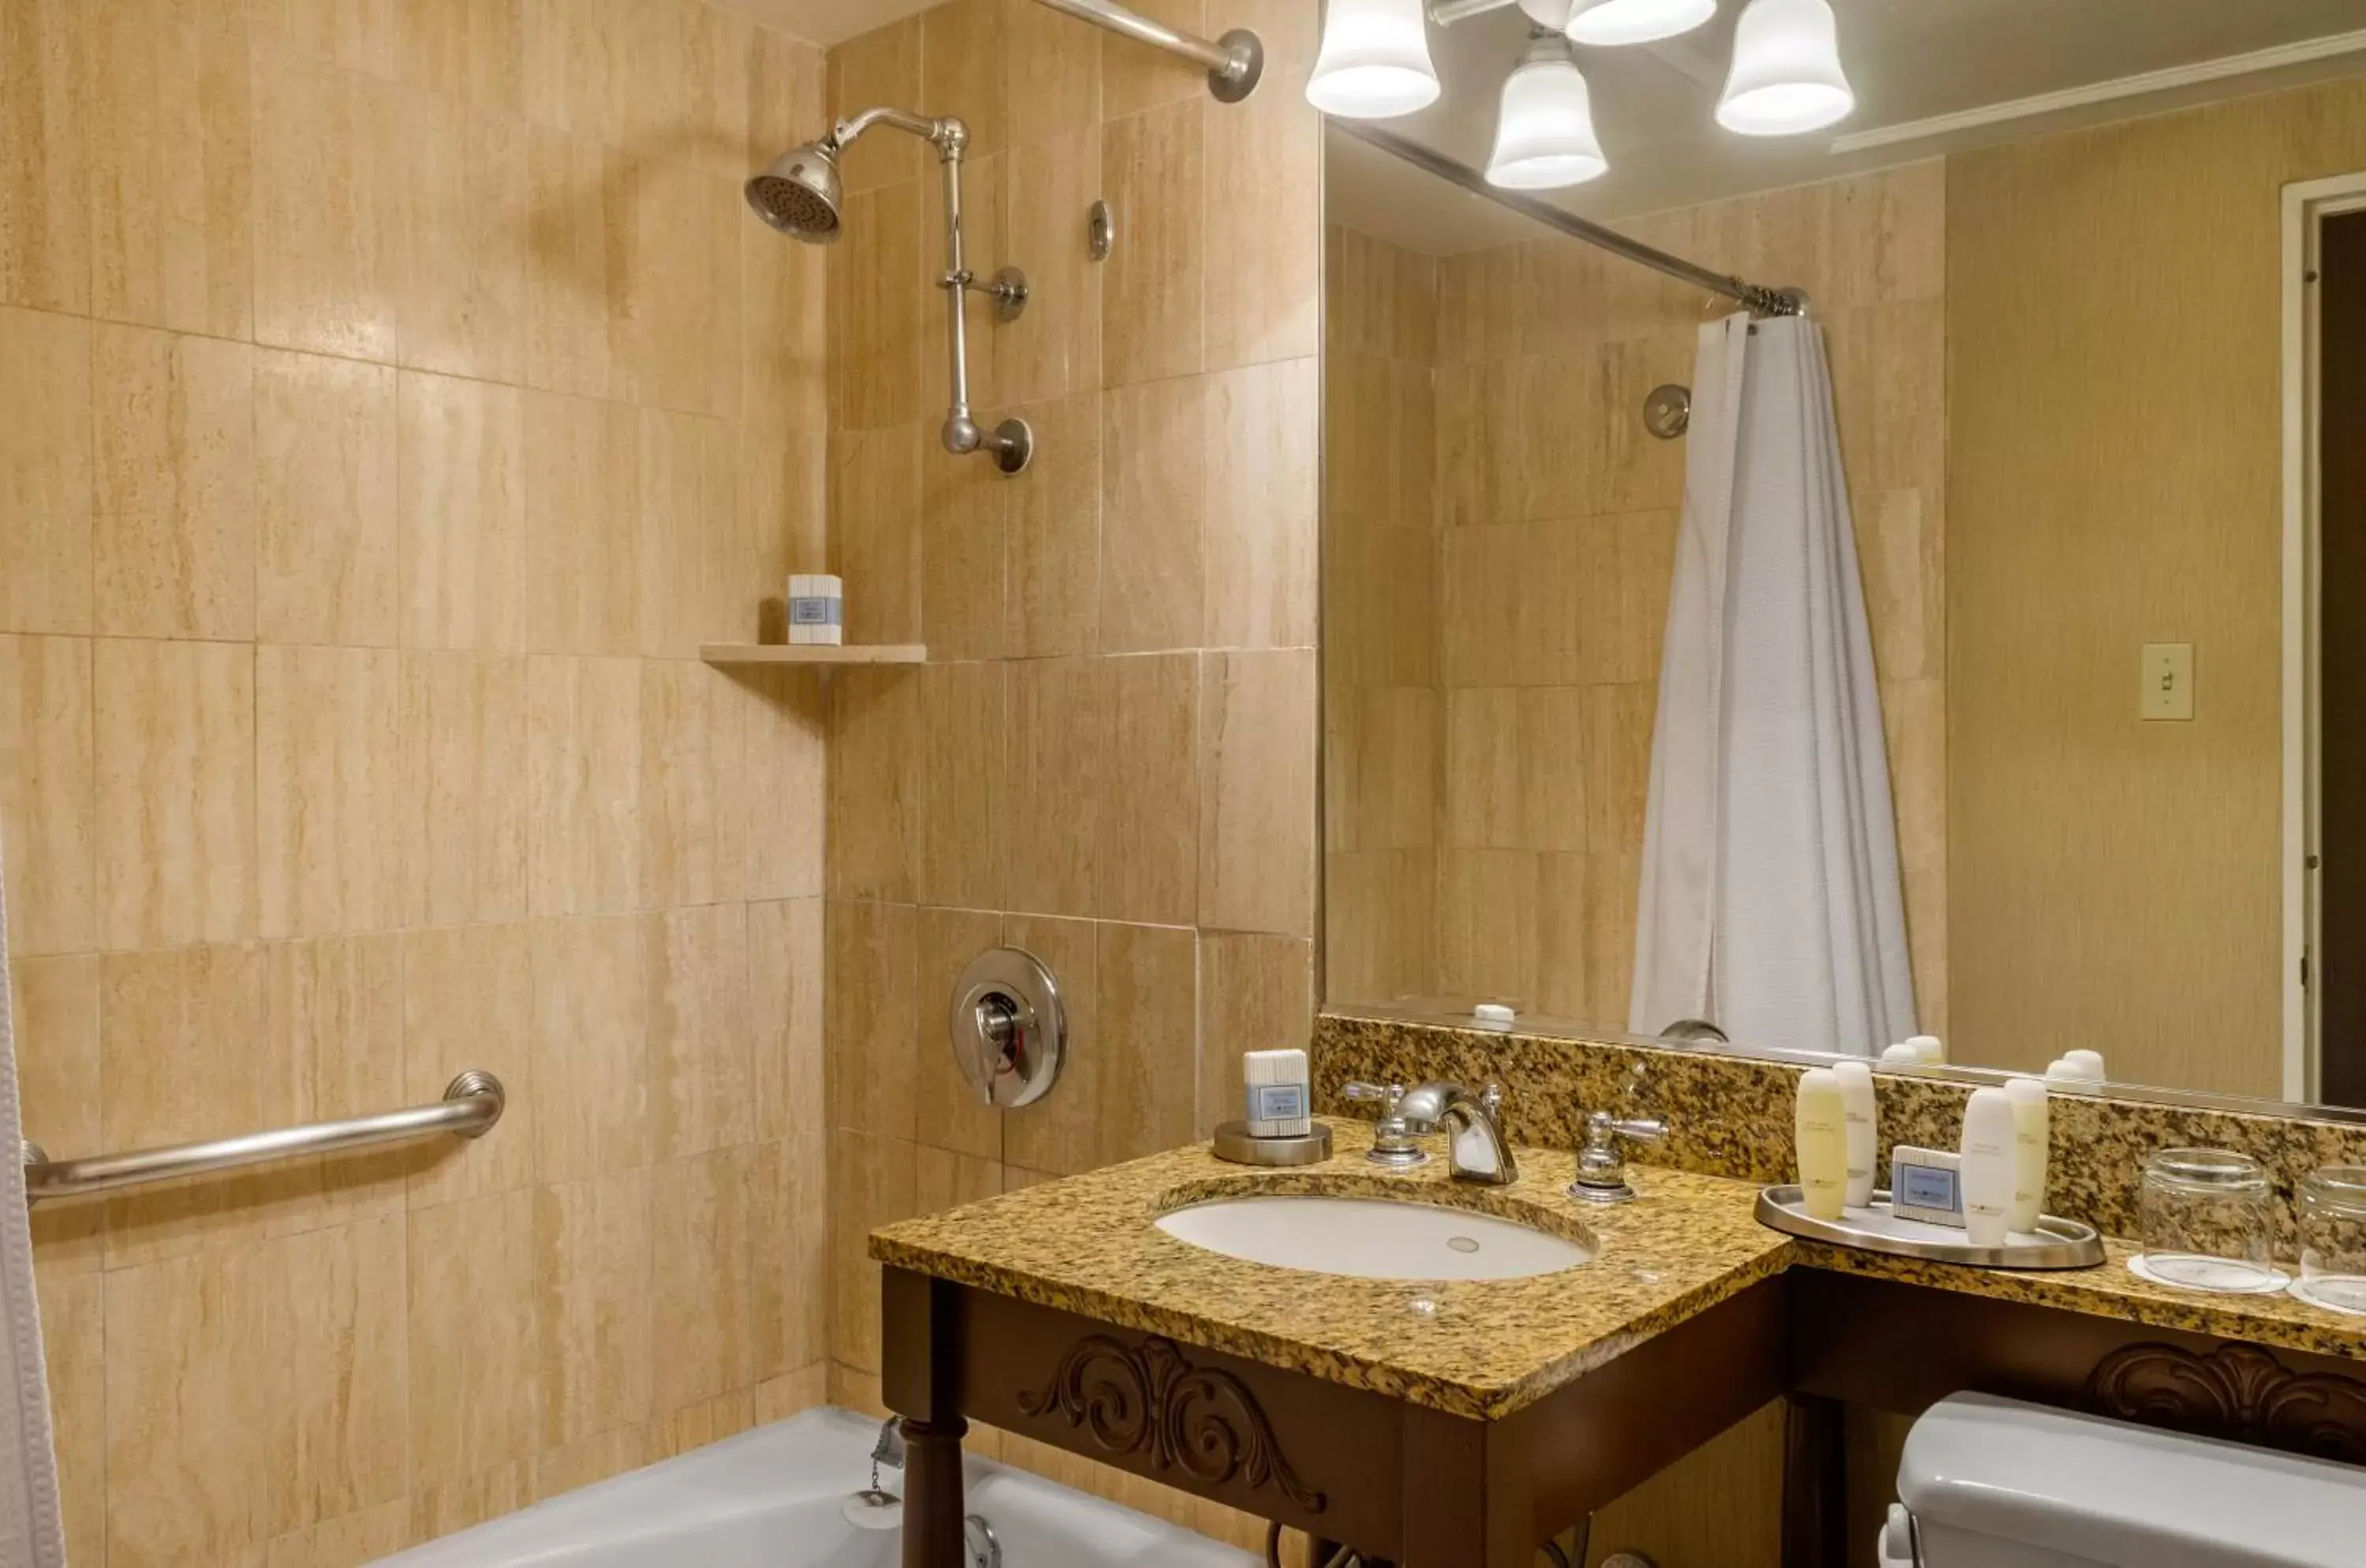 Bathroom in Omni Royal Orleans Hotel